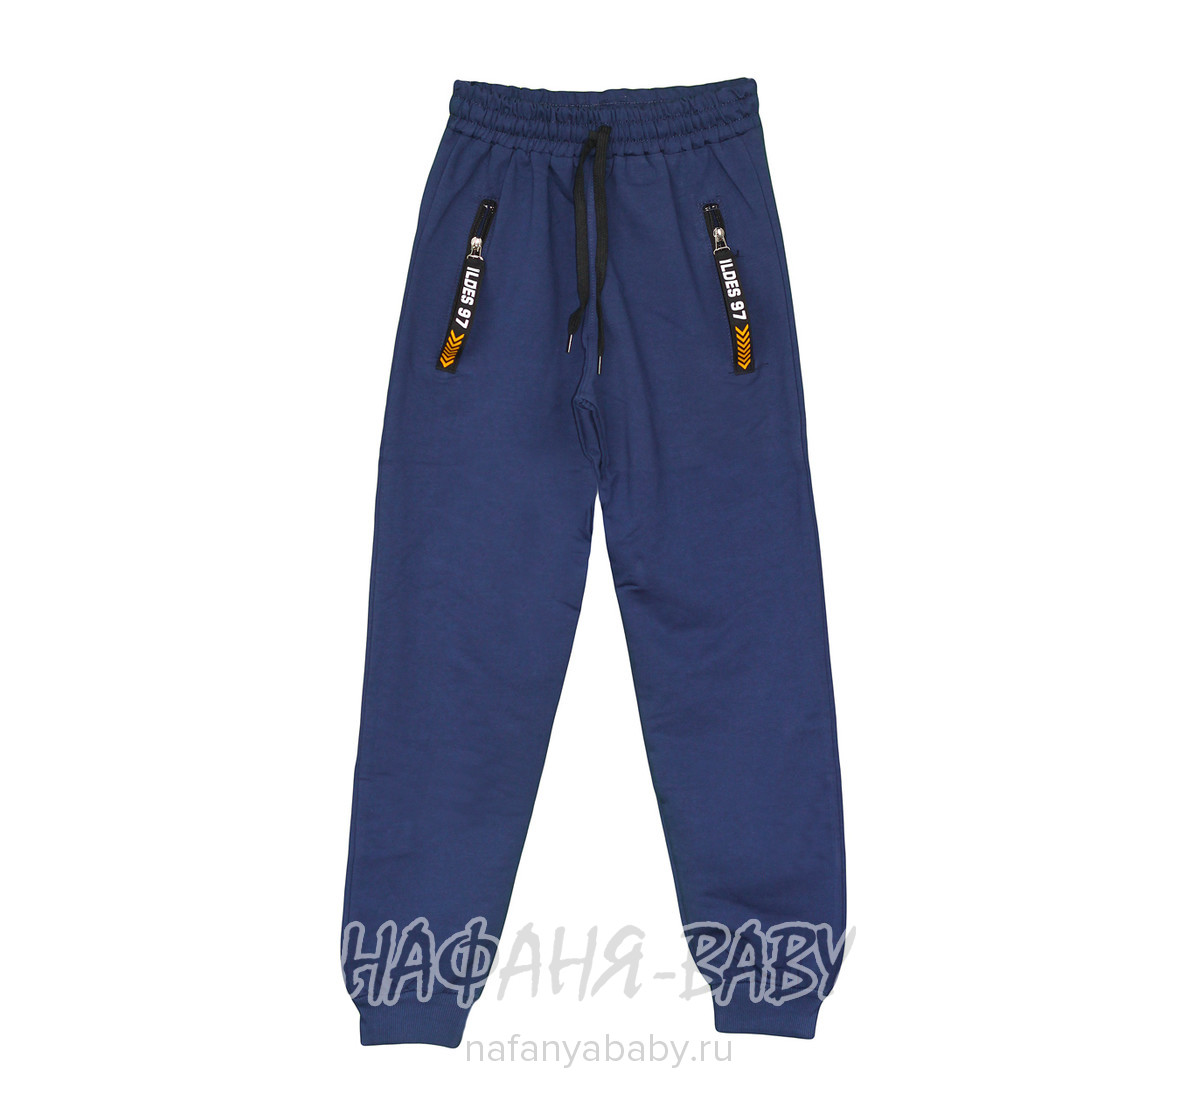 Подростковые трикотажные брюки ILDES, купить в интернет магазине Нафаня. арт: 4814.